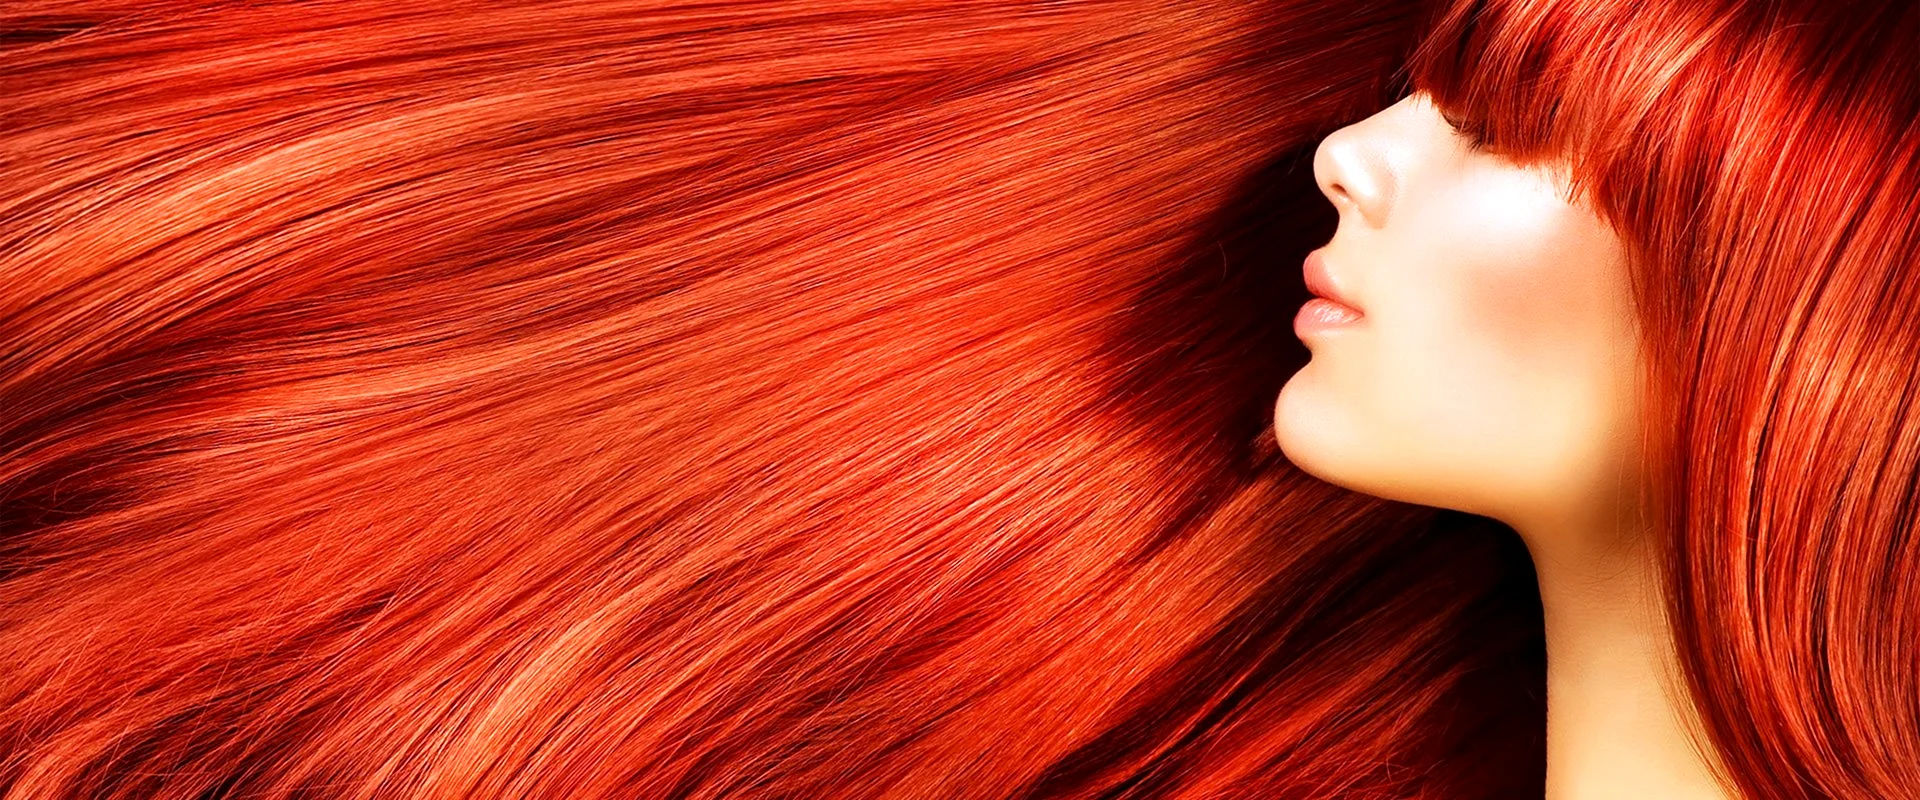 Рыжий цвет волос фото палитра